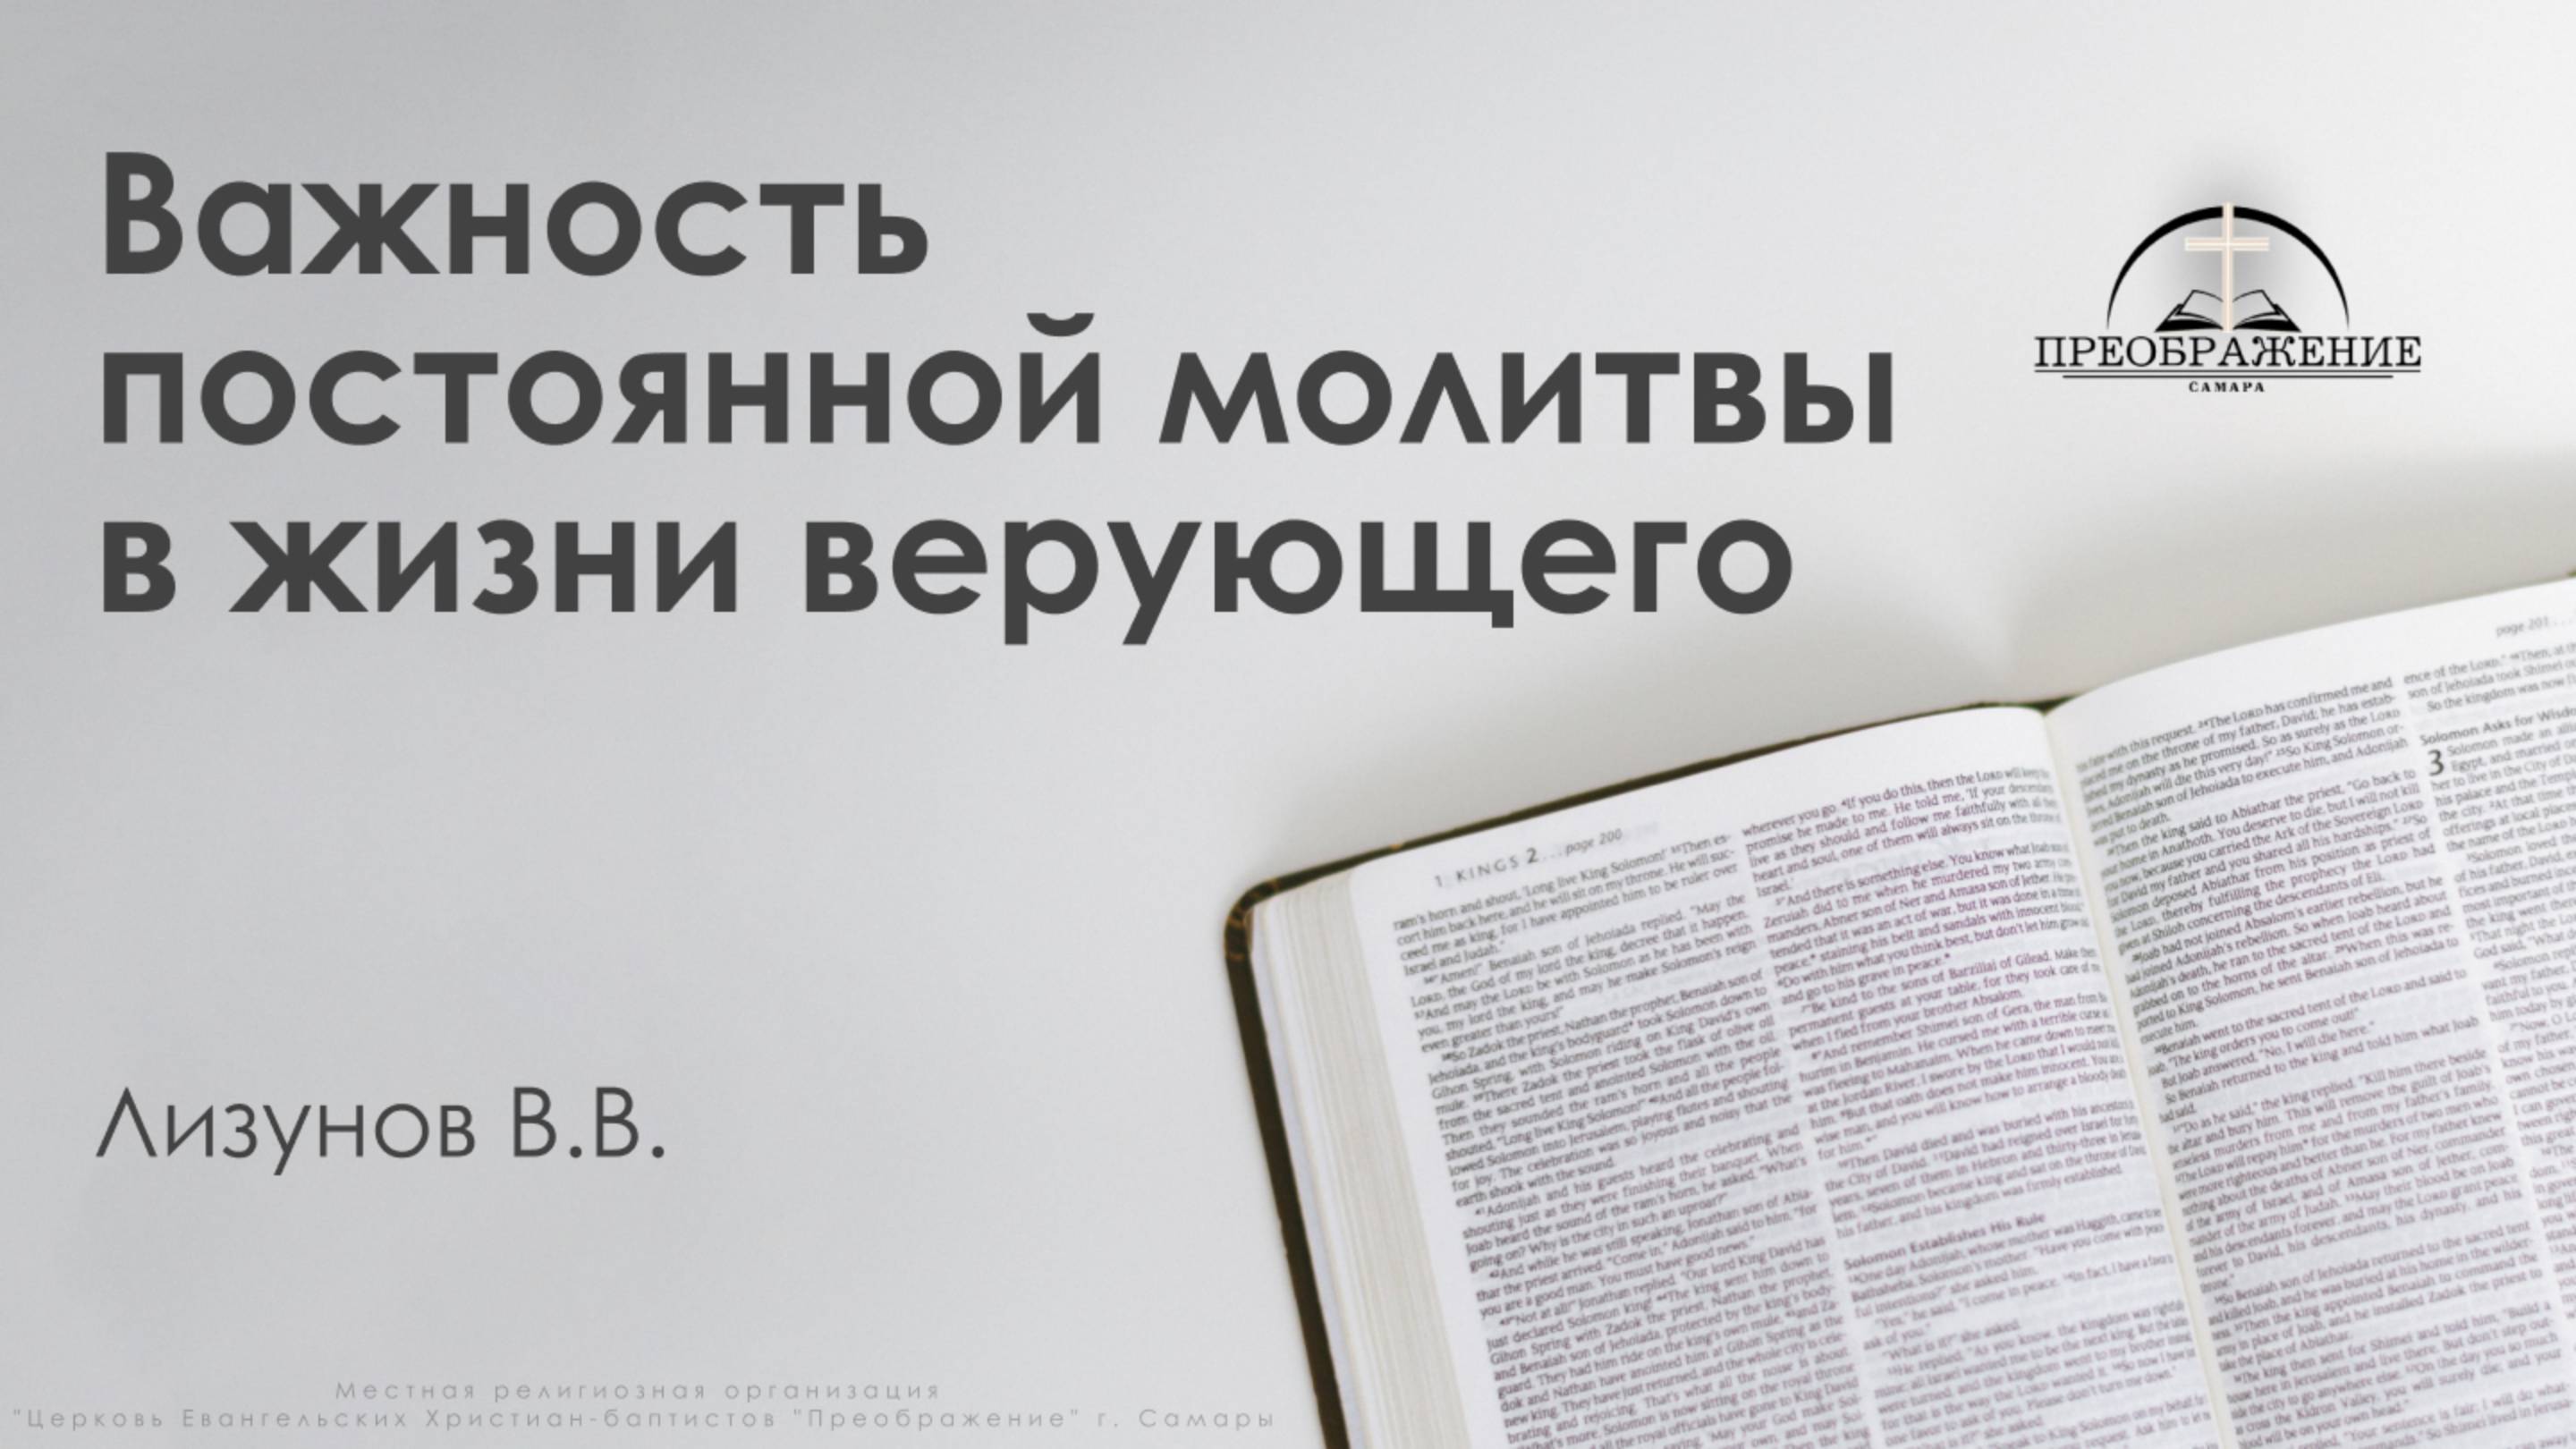 «Важность постоянной молитвы в жизни верующего» | Лизунов В.В.